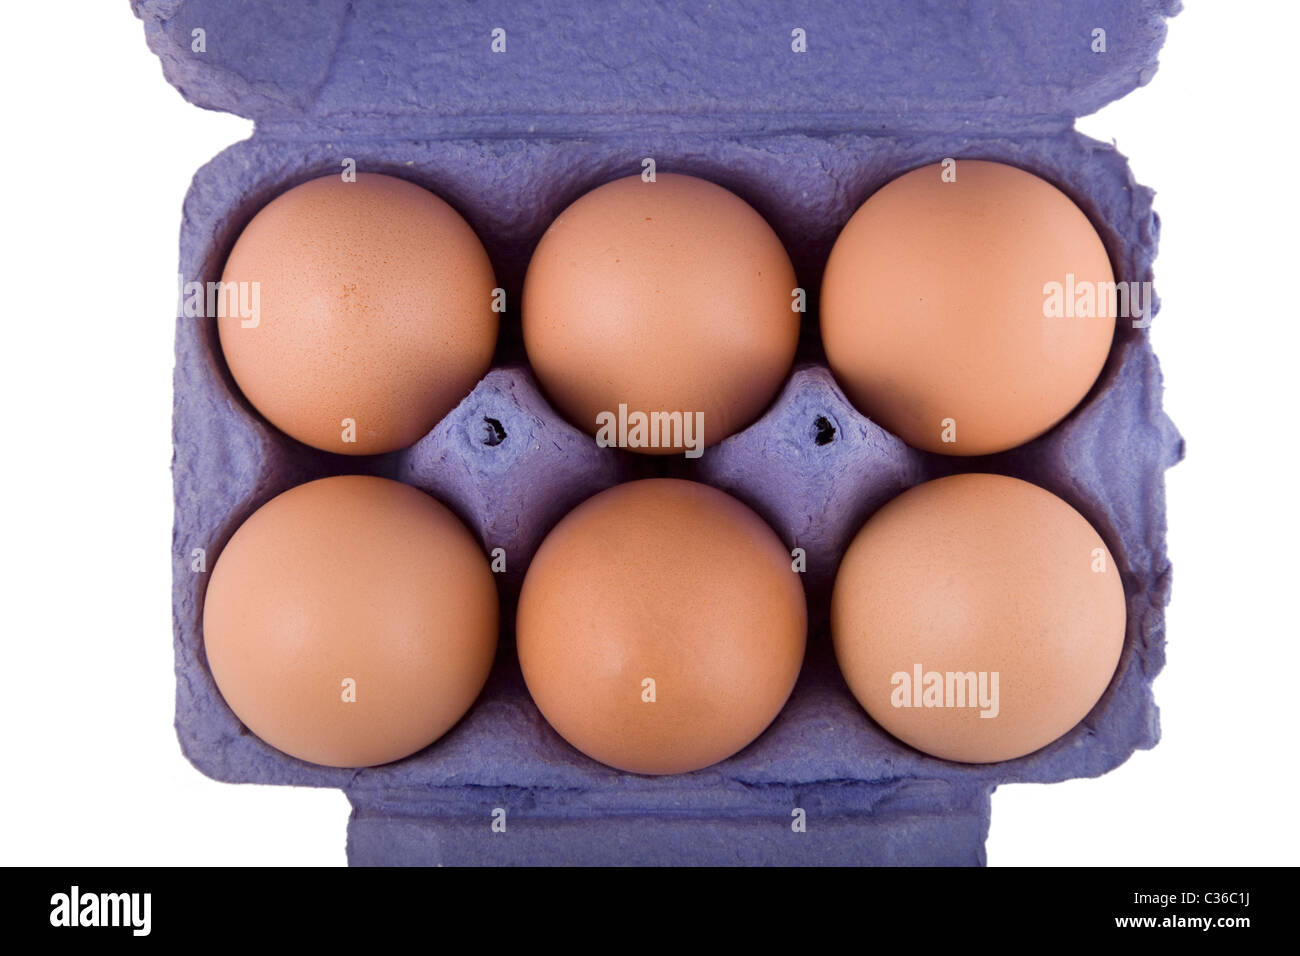 Brown uova di galline in blu confezione di uova, isolato su sfondo bianco Foto Stock